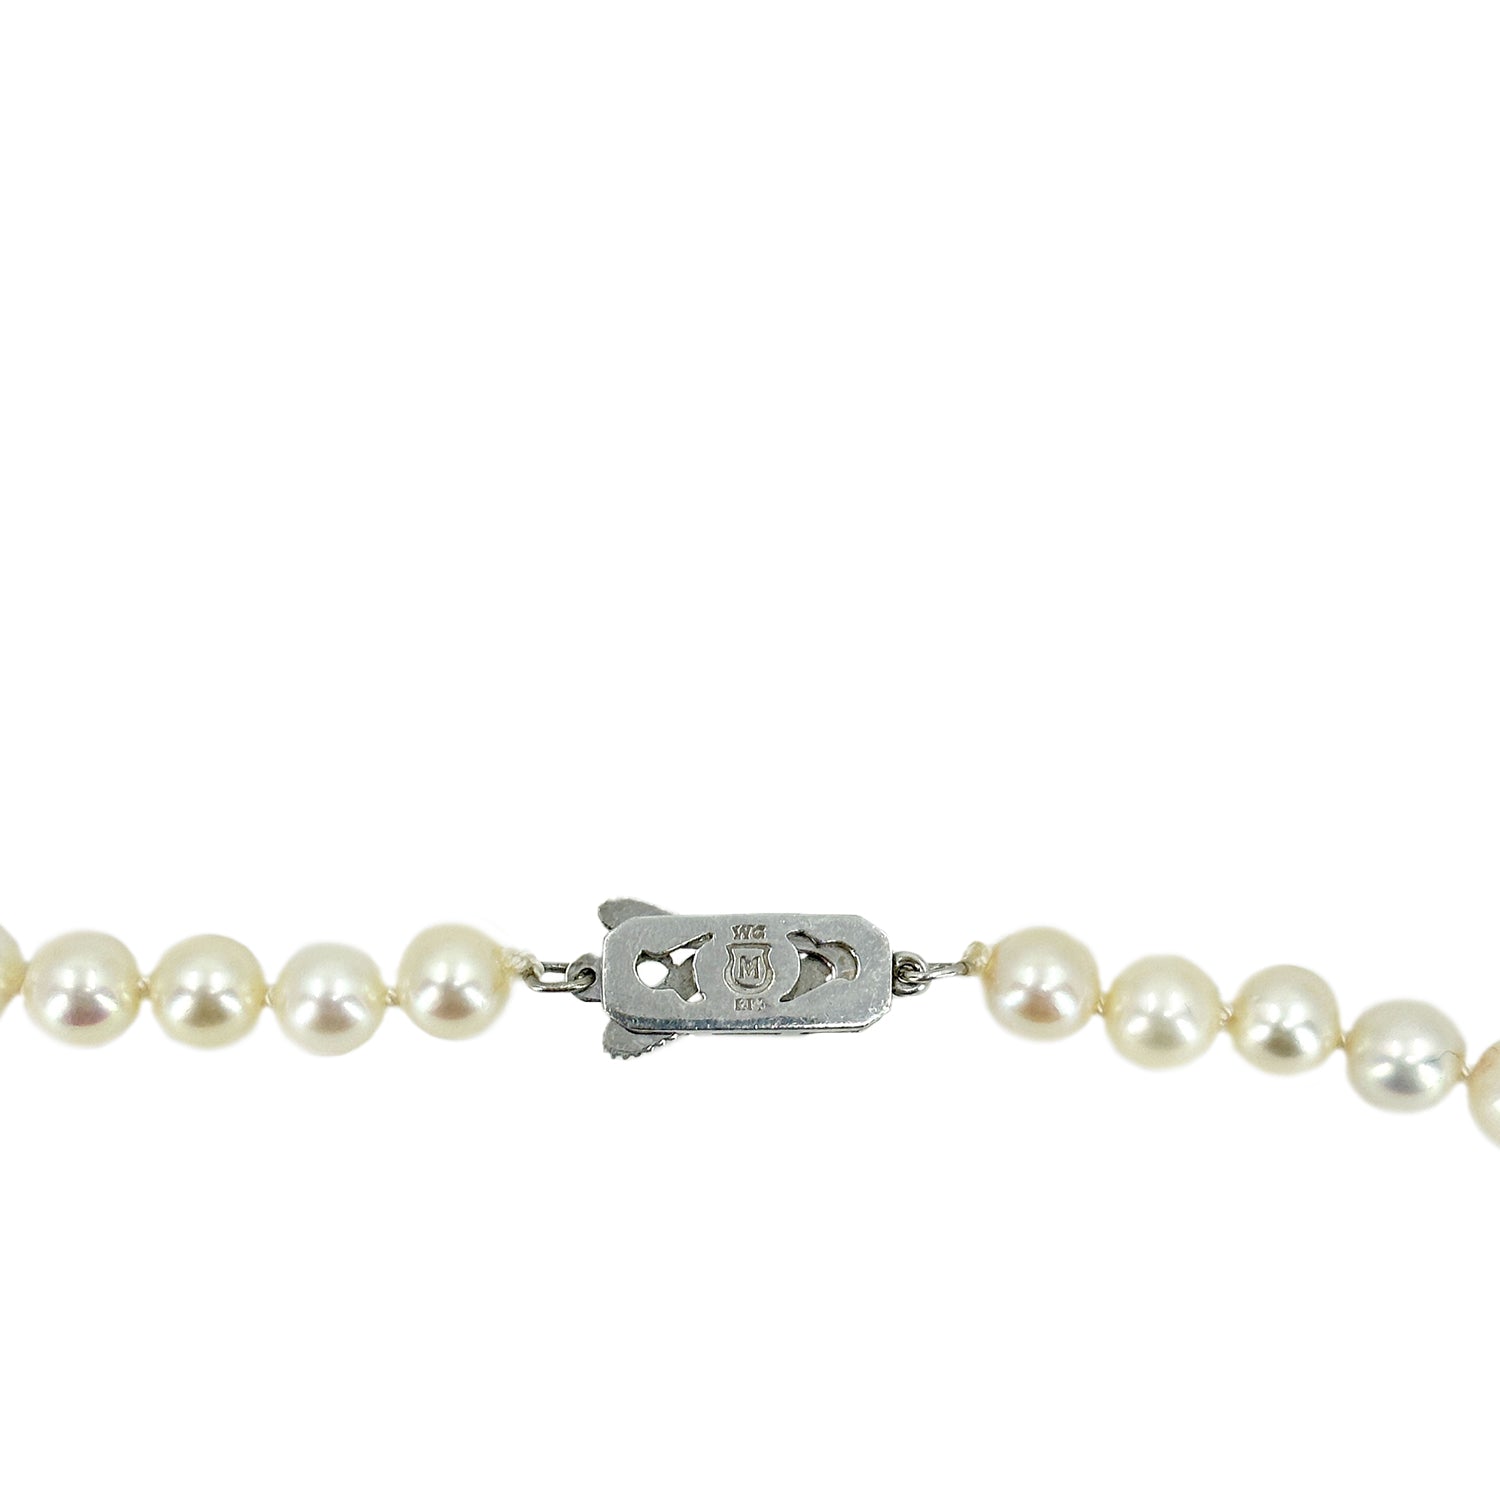 Vintage CIRO CULTURED Pearls